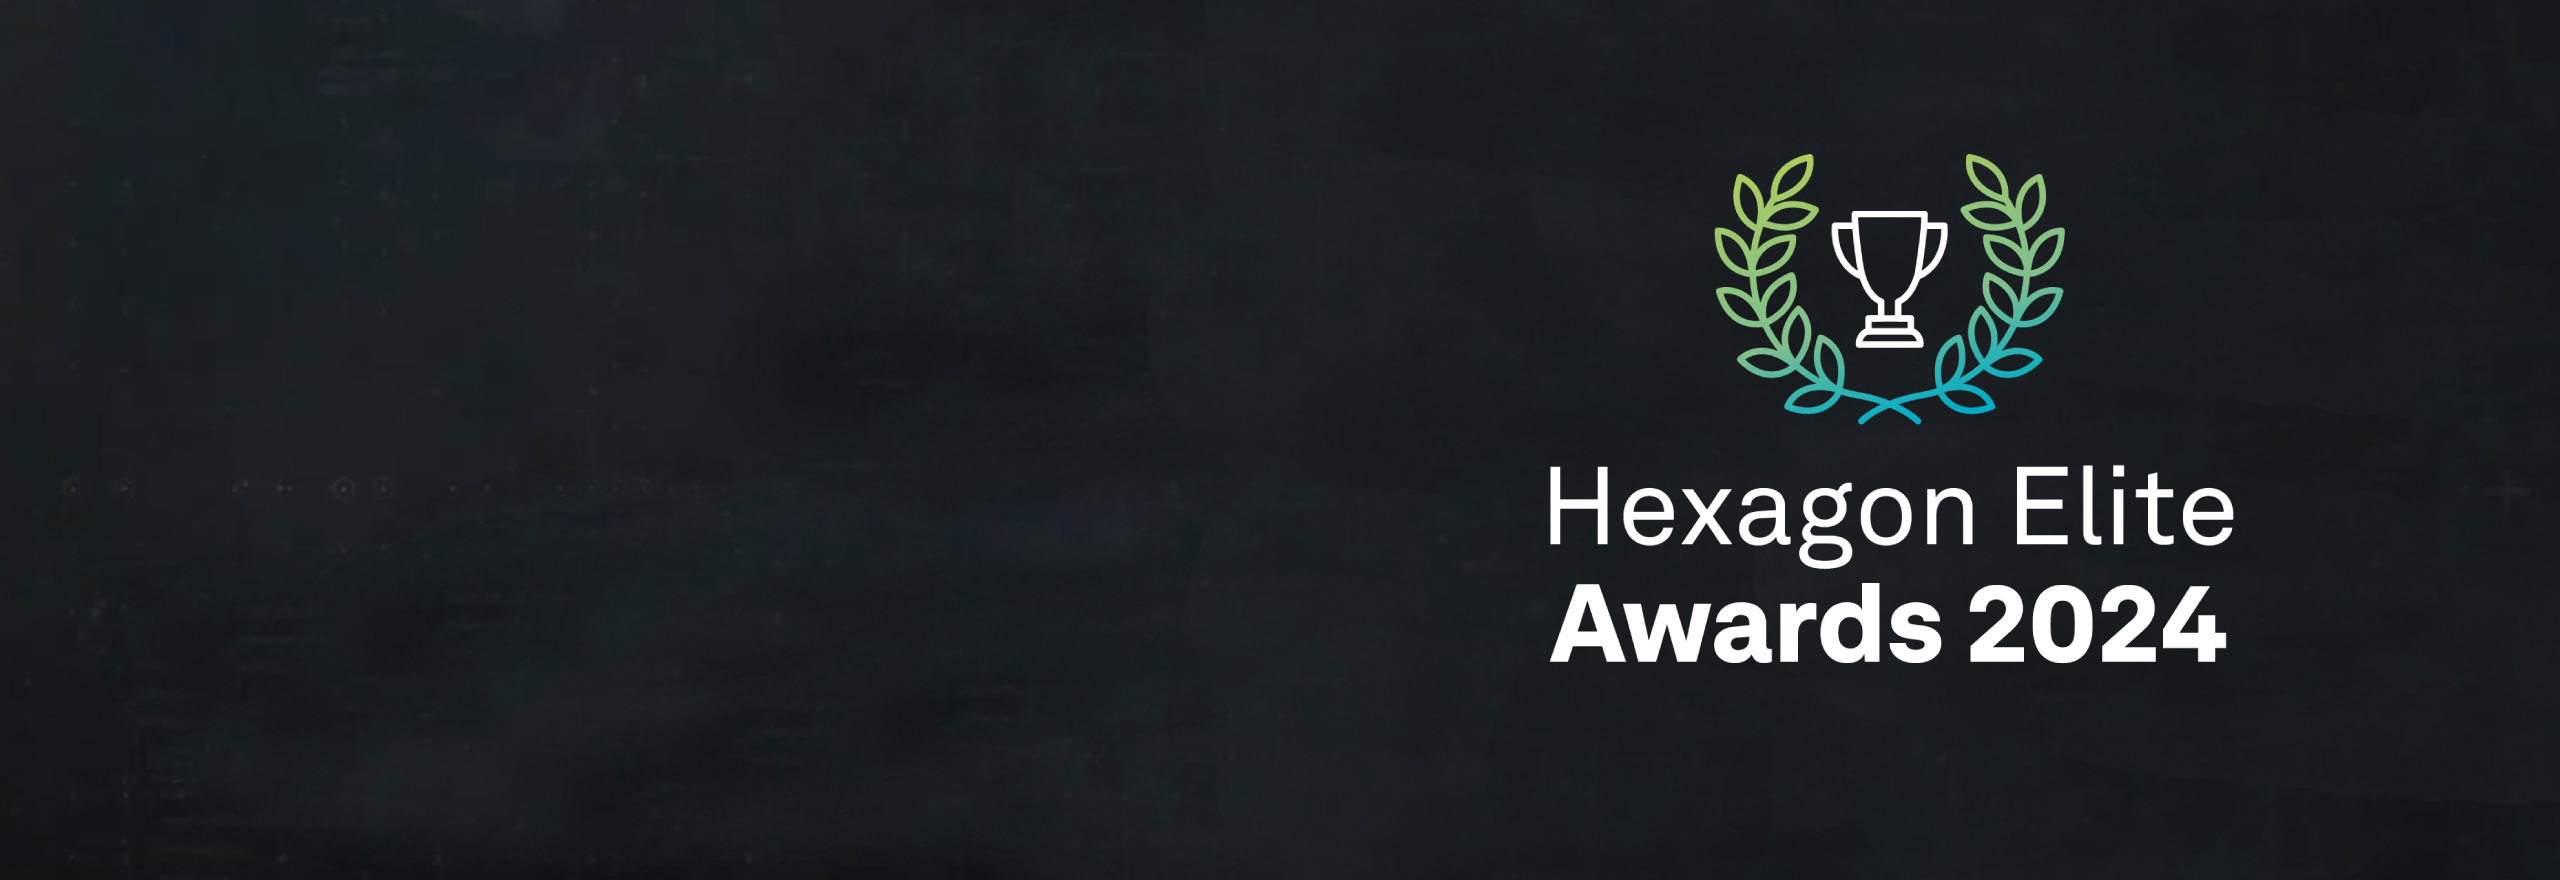 2024 Hexagon Elite Awards